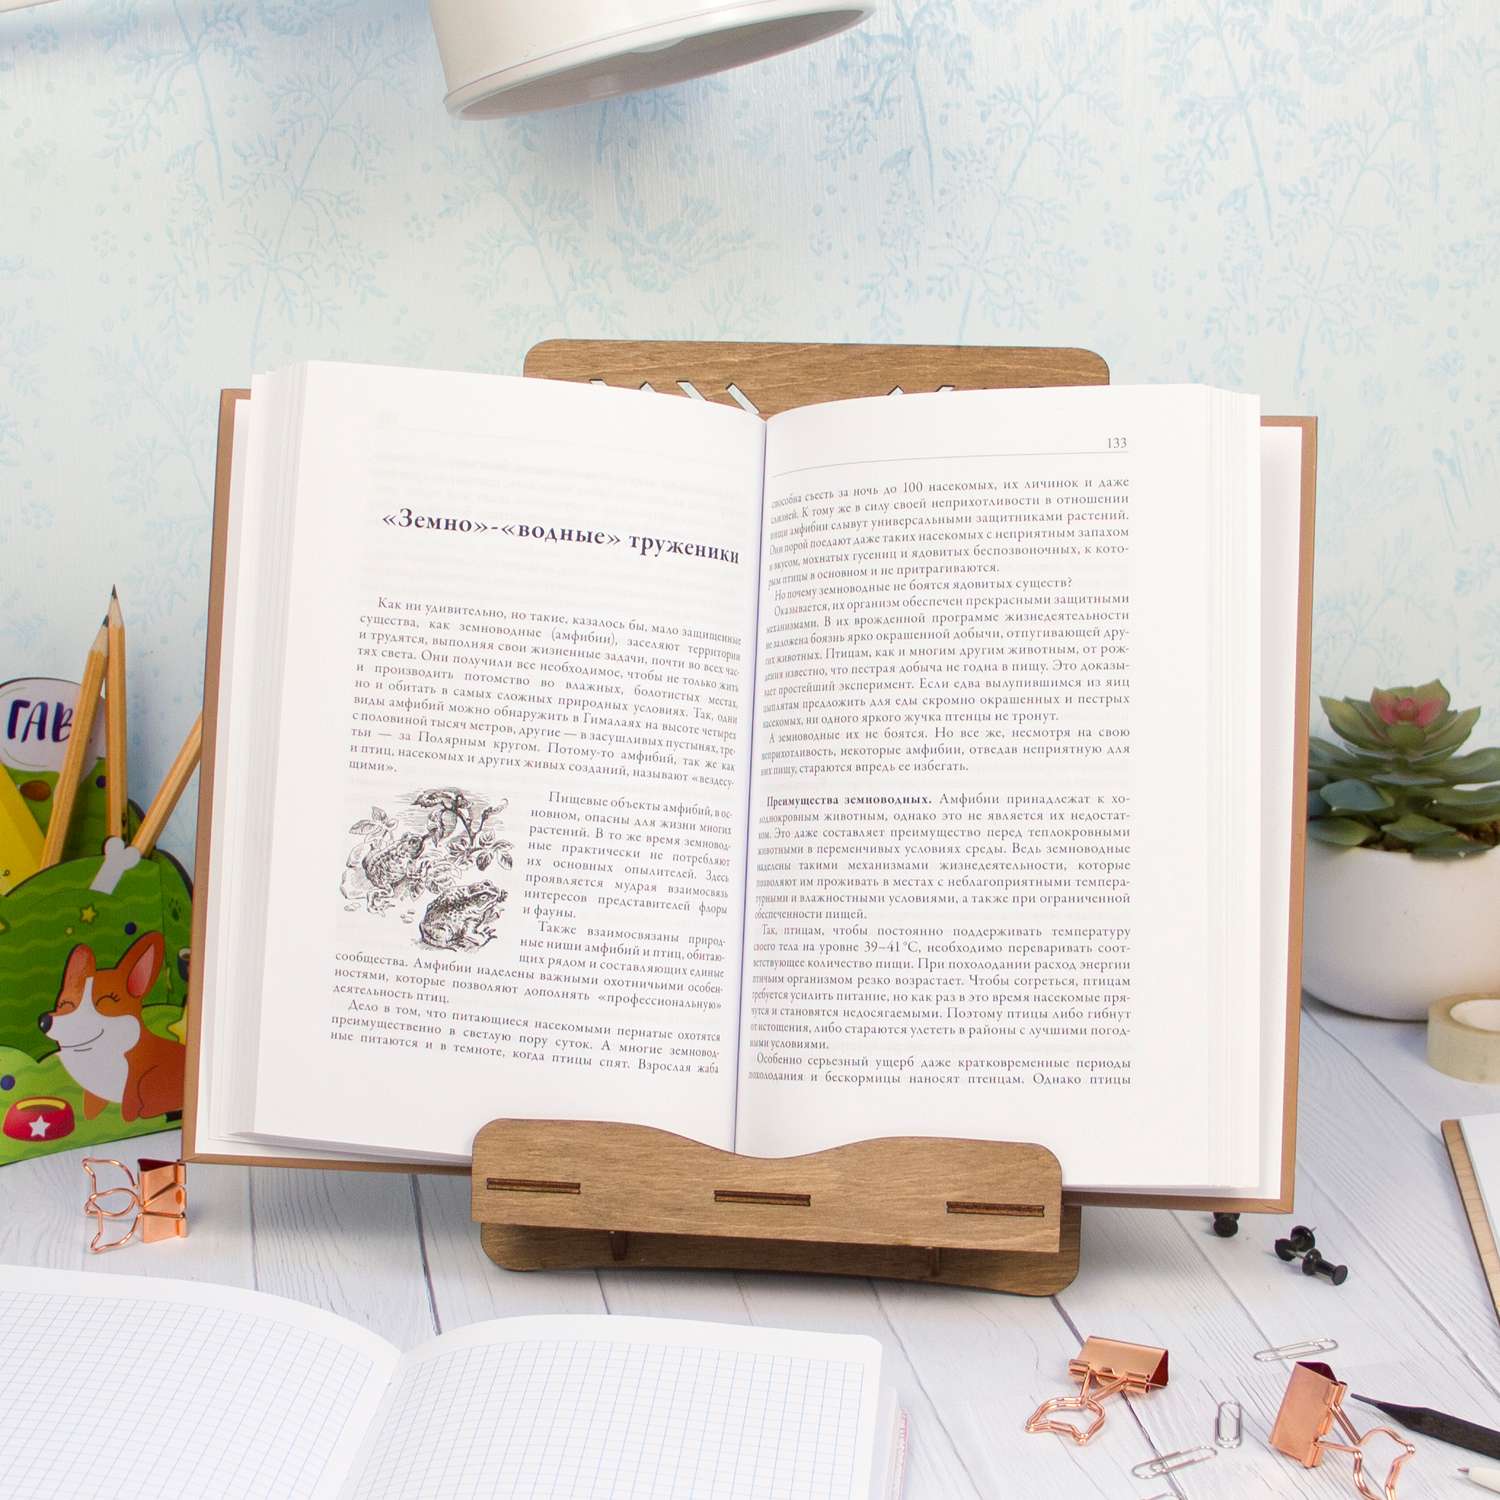 Идеальная подставка для книг и блокнотов на рабочий стол найдена! Цена под | Instagram